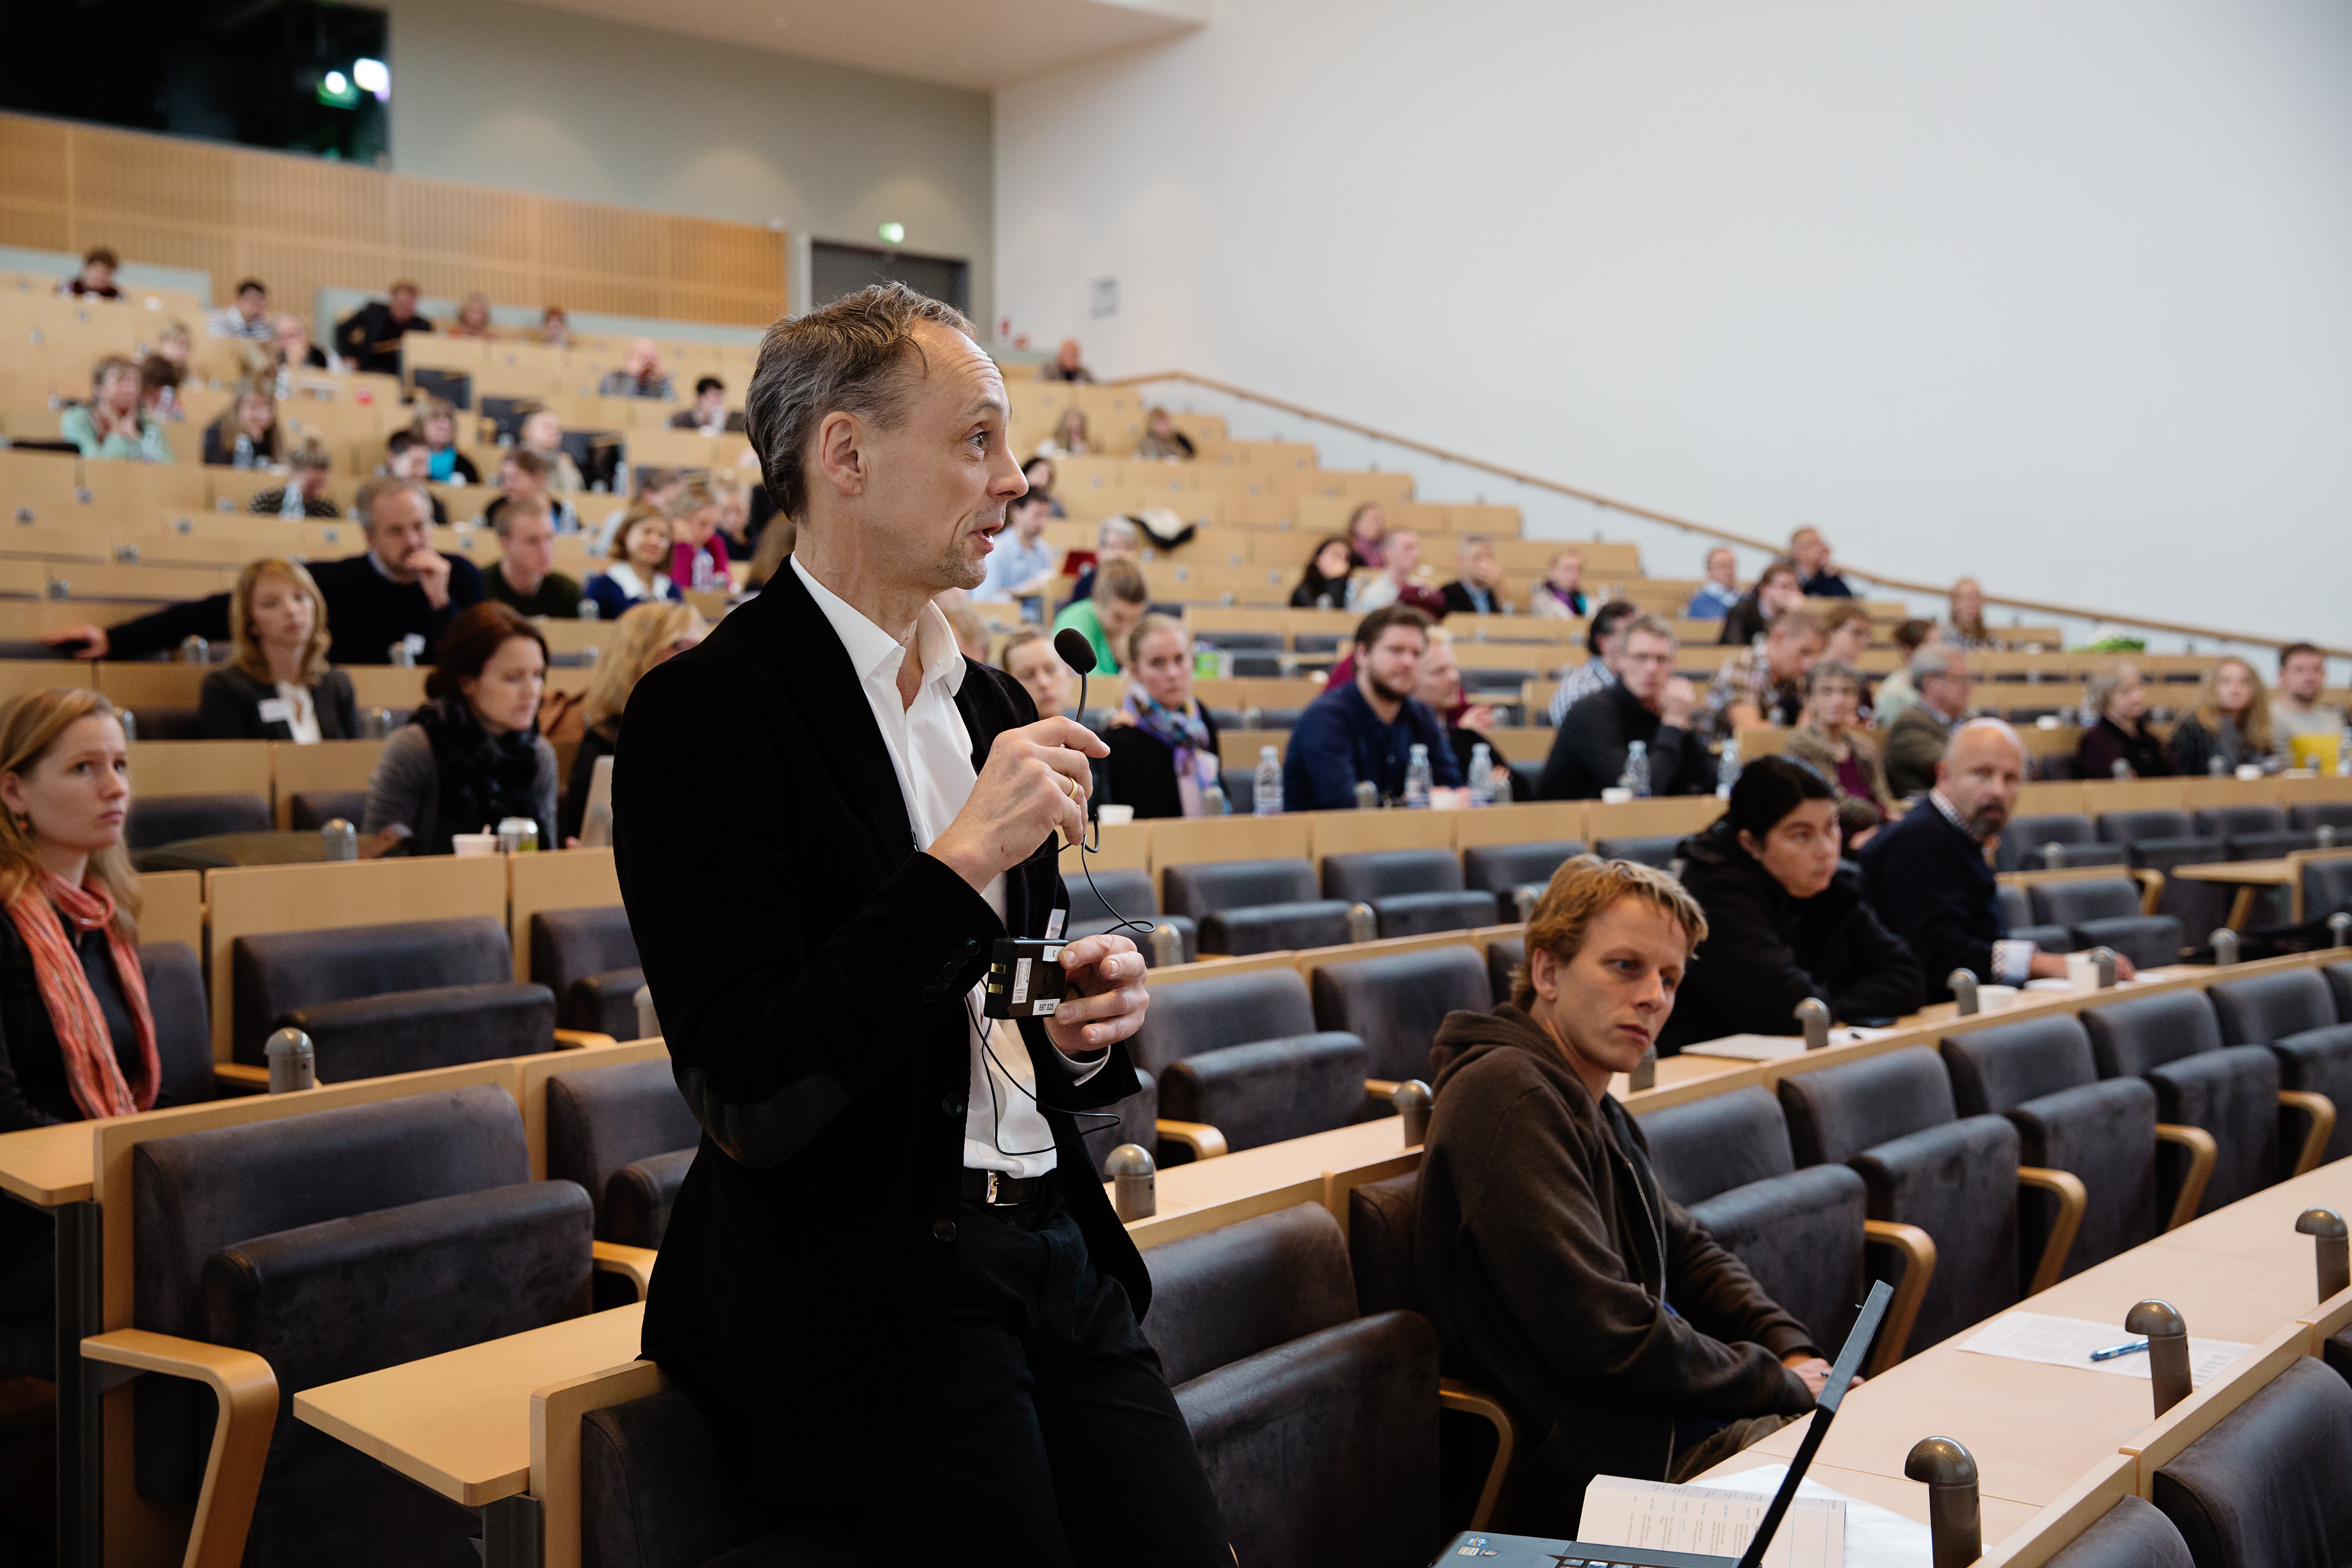 Deltagerne i prissymposiet deltog aktivt i debatten om makrofagers betydning for betændelsessygdomme. Foto: Martin Gravgaard Fotografi.